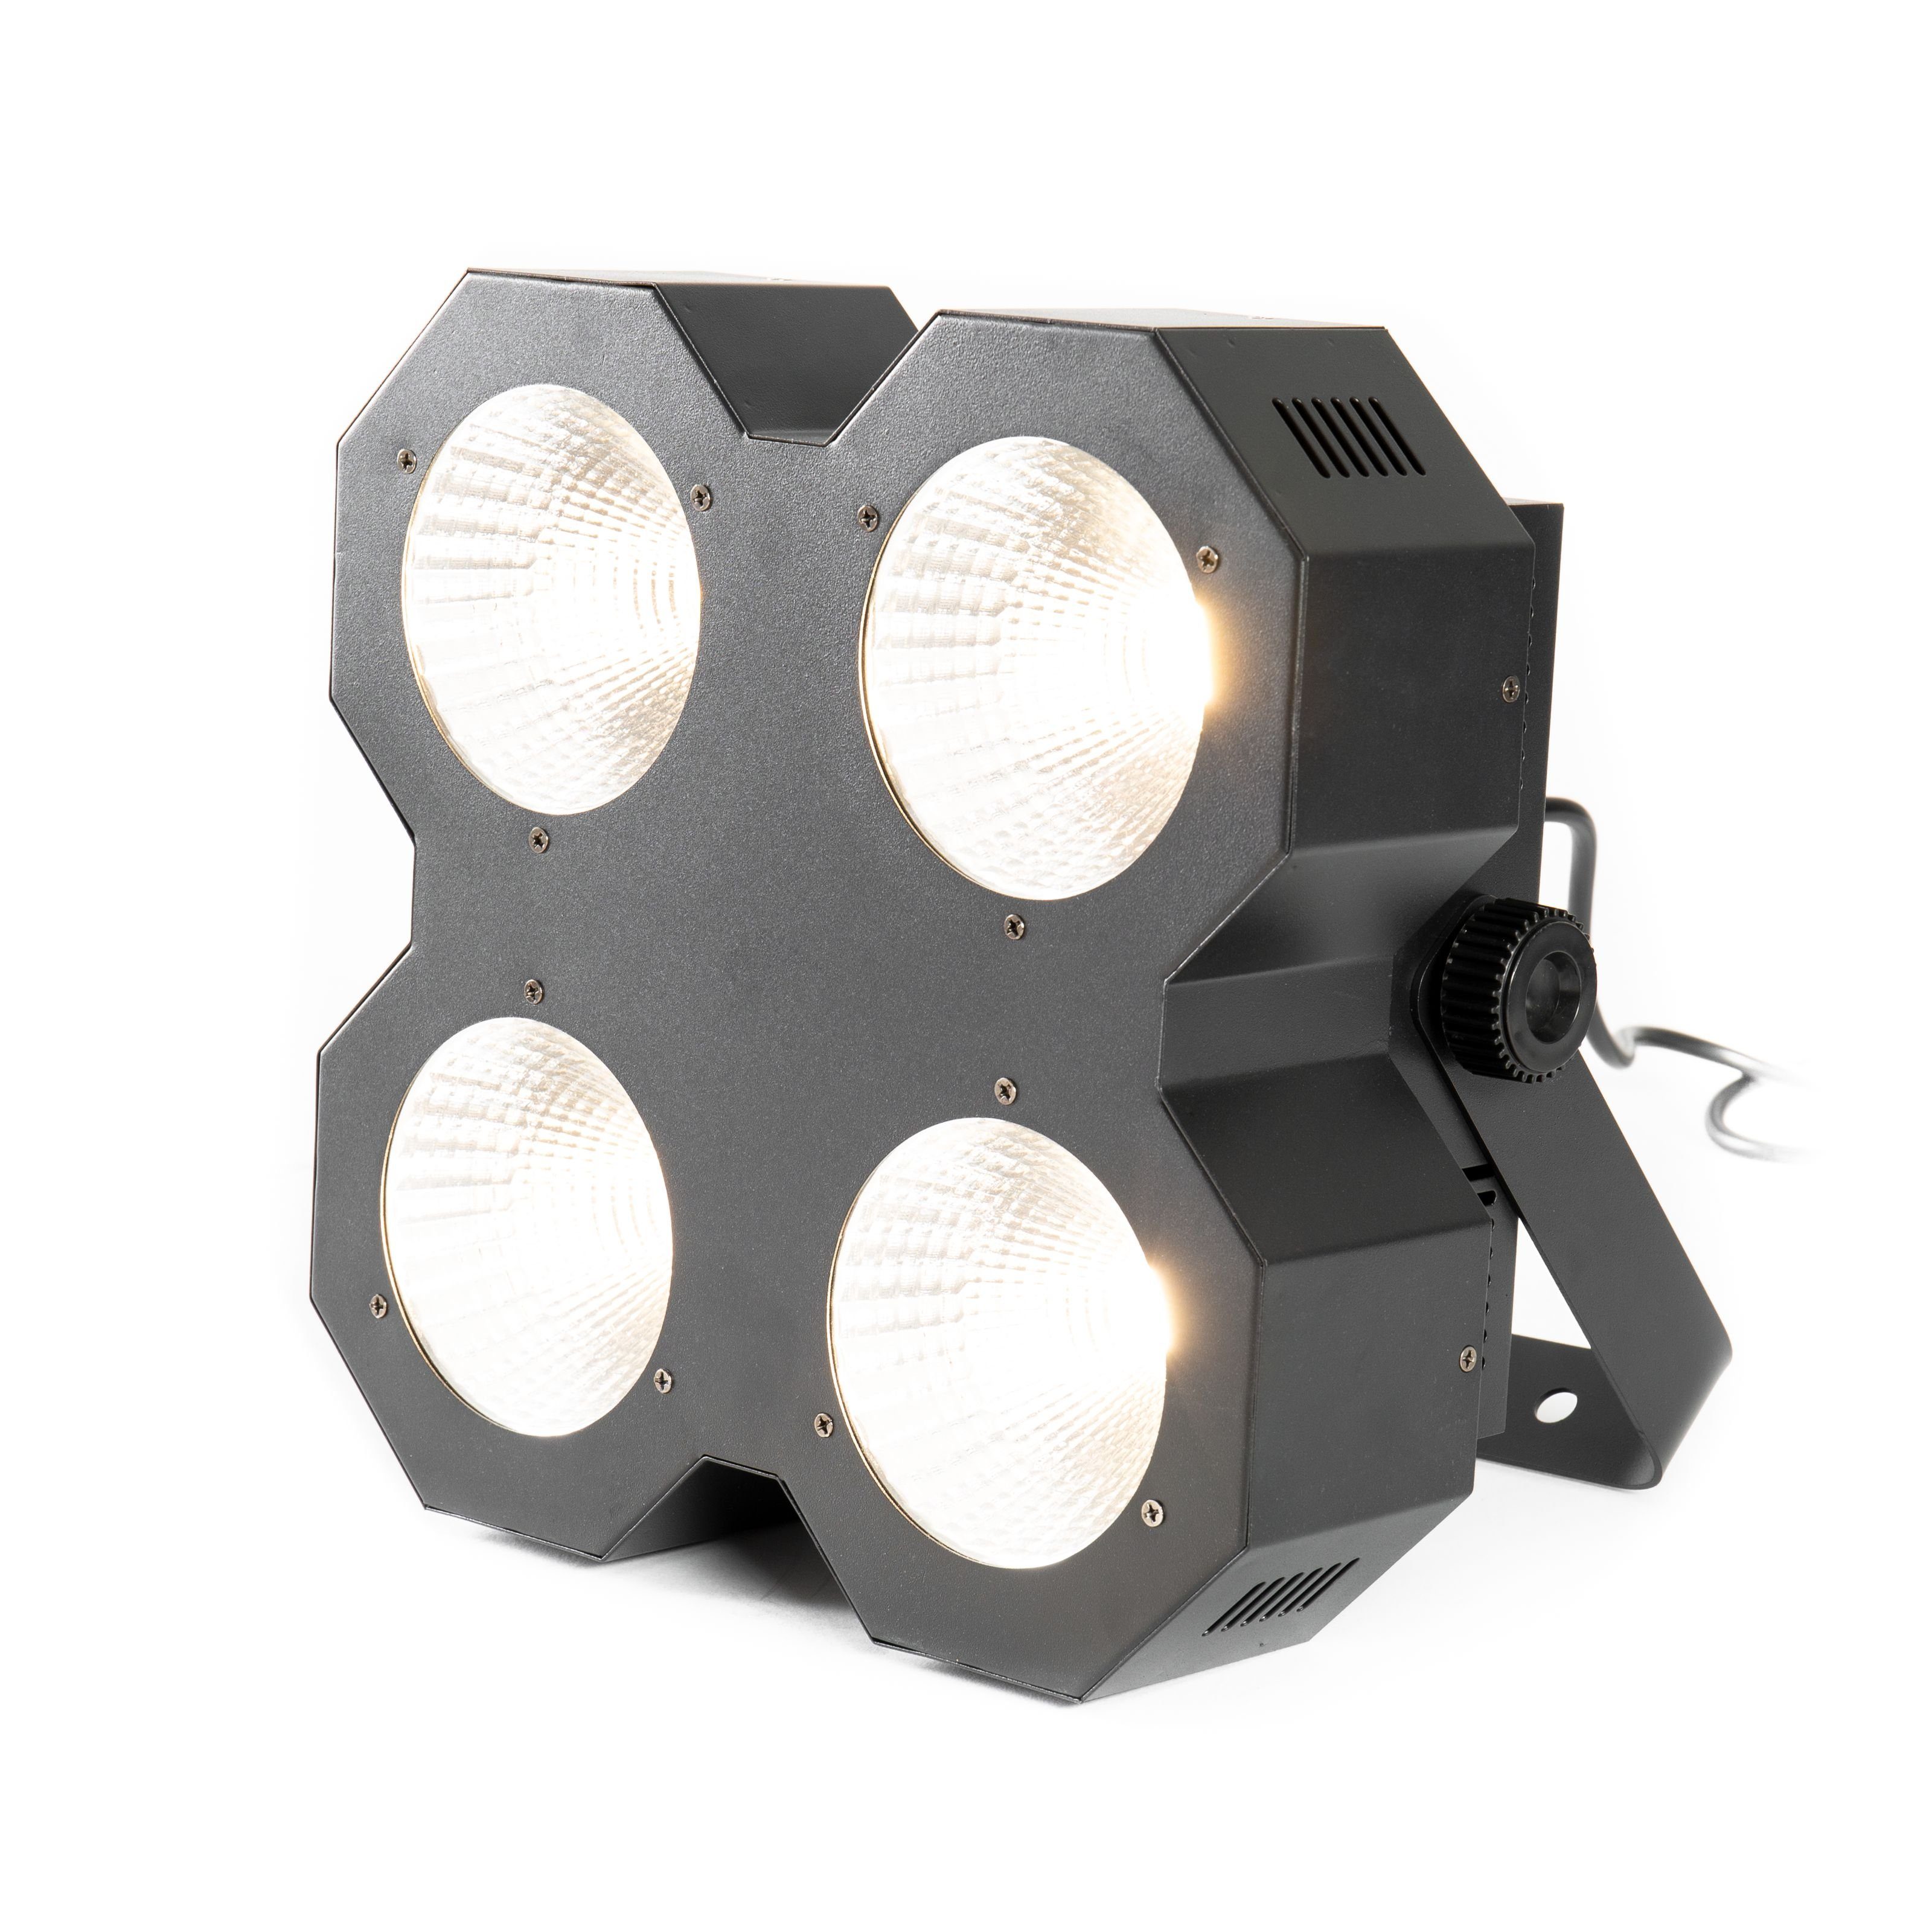 lightmaXX Discolicht, - 4 LED Blinder Blinder